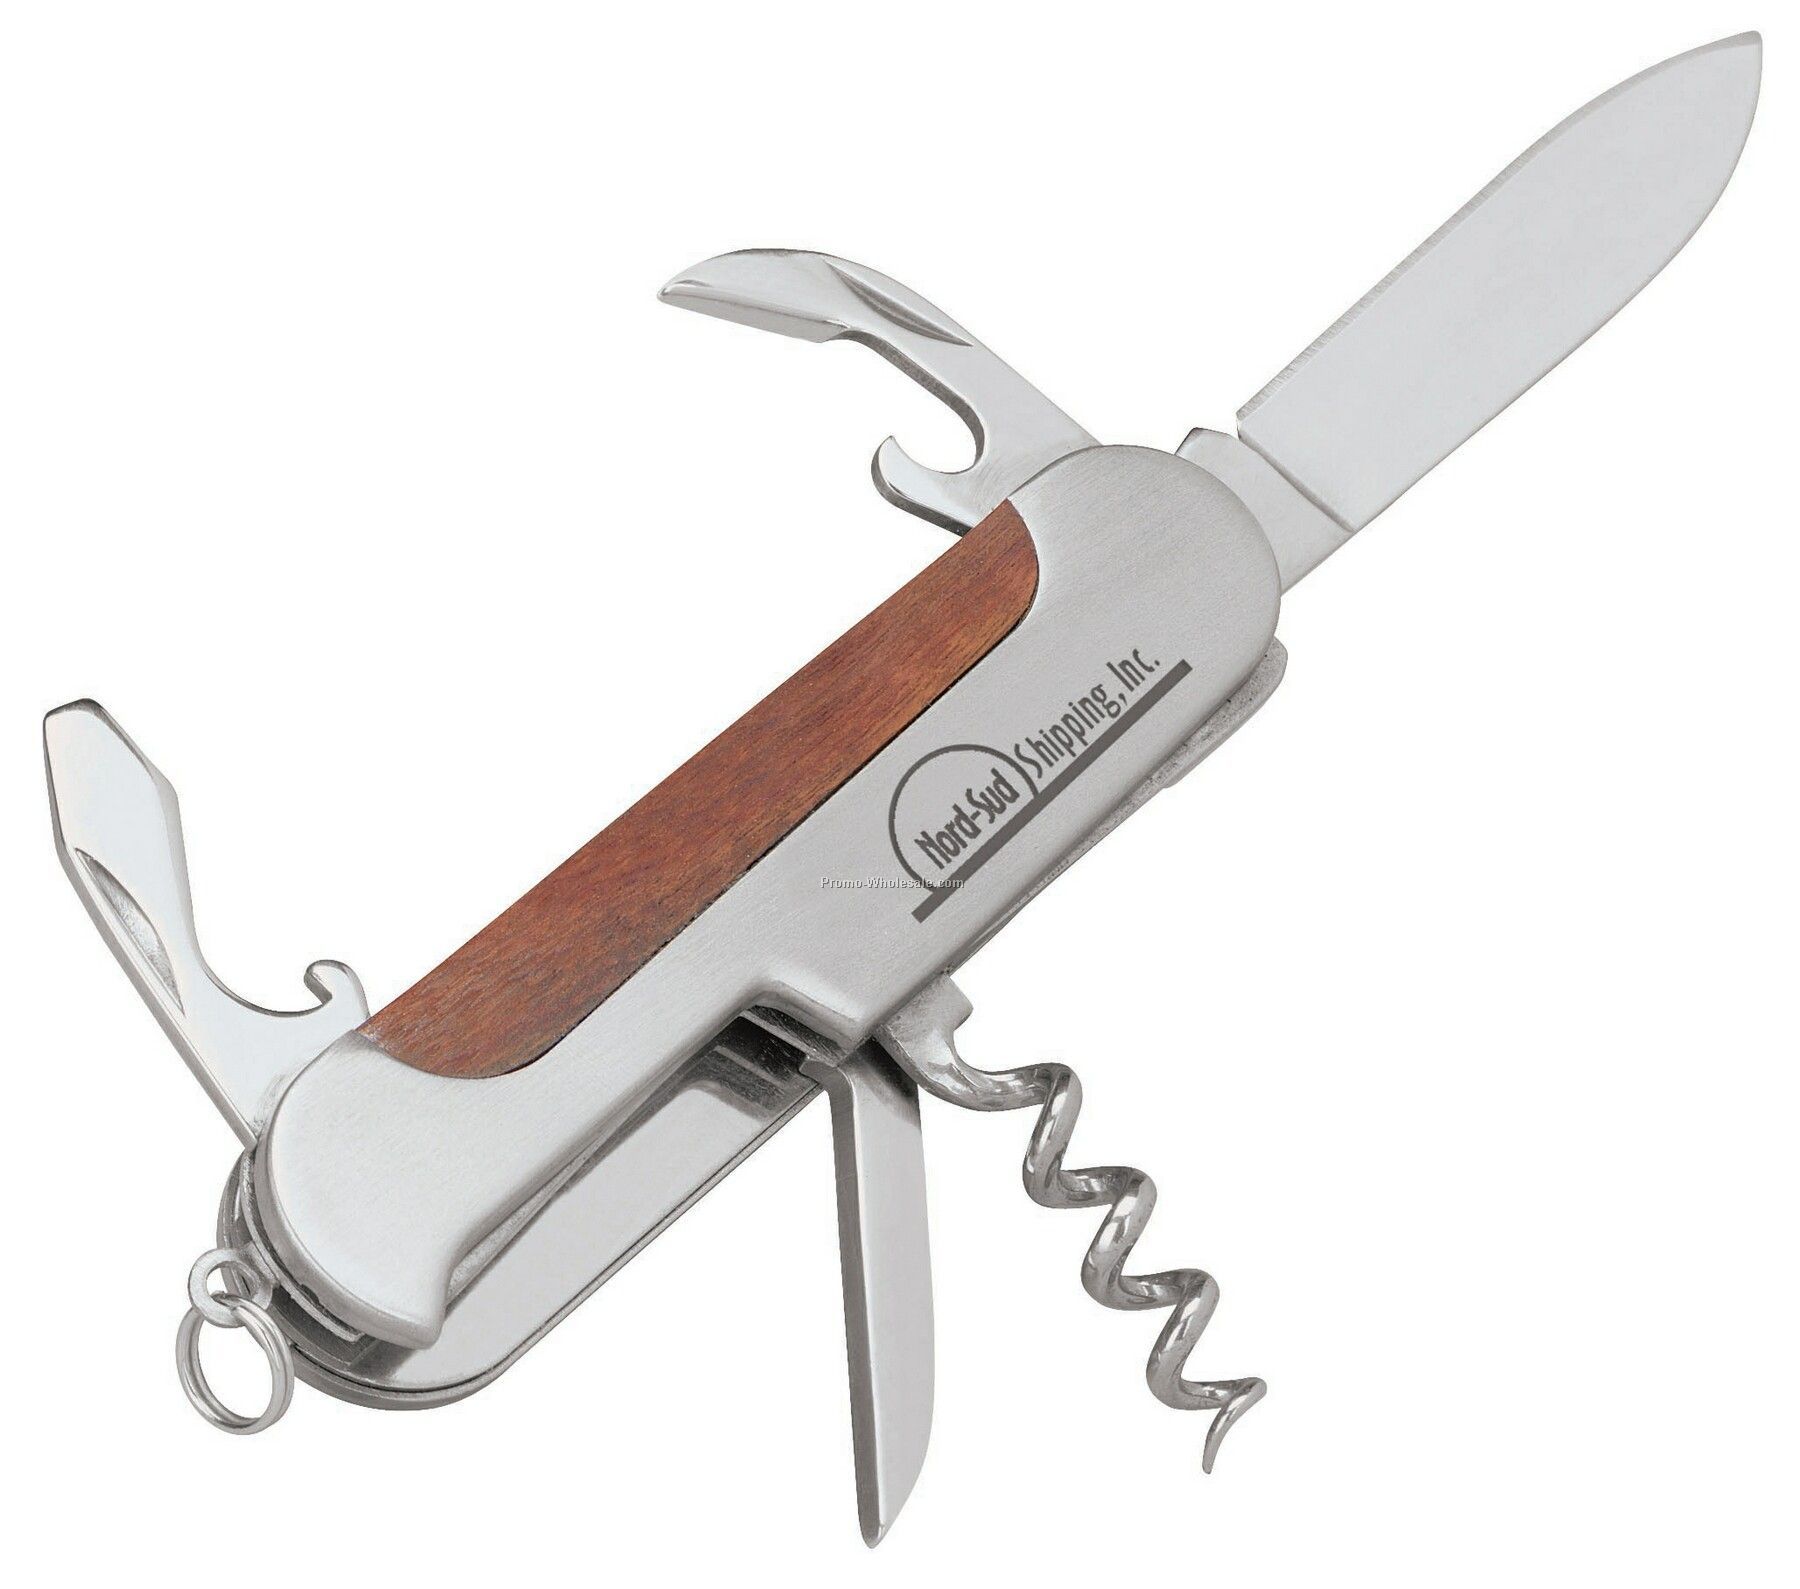 V-line 7-function Pocket Knife